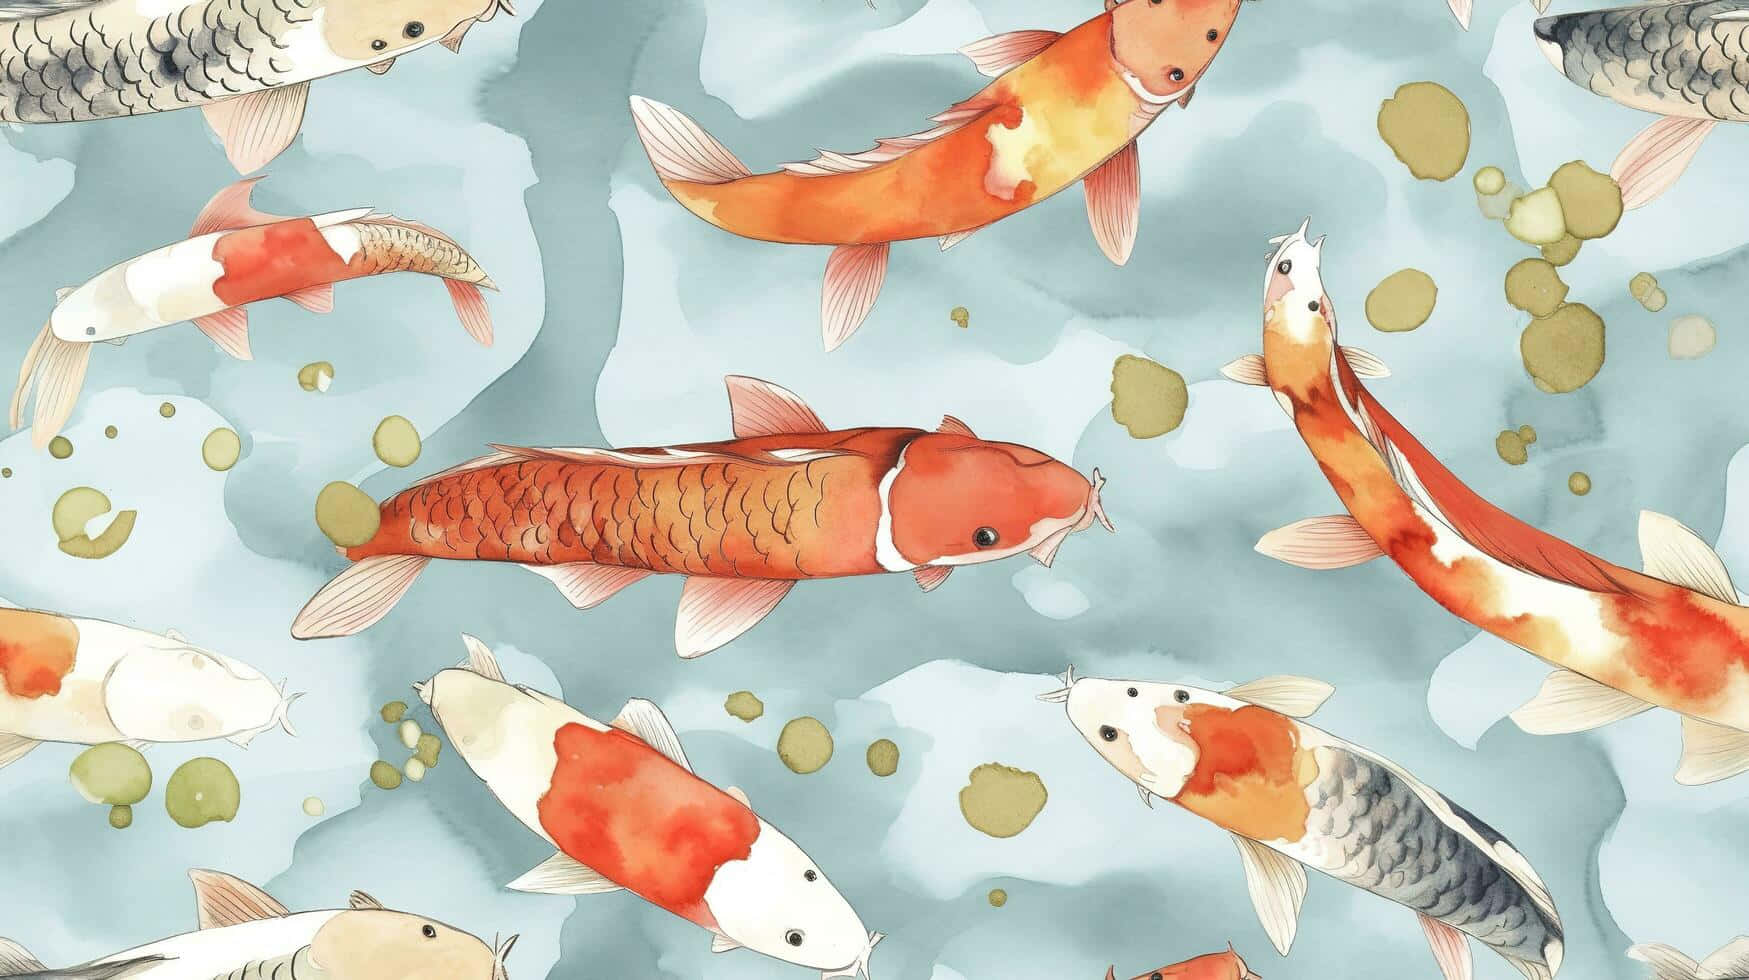 Koi Fish Watercolor Pattern.jpg Wallpaper